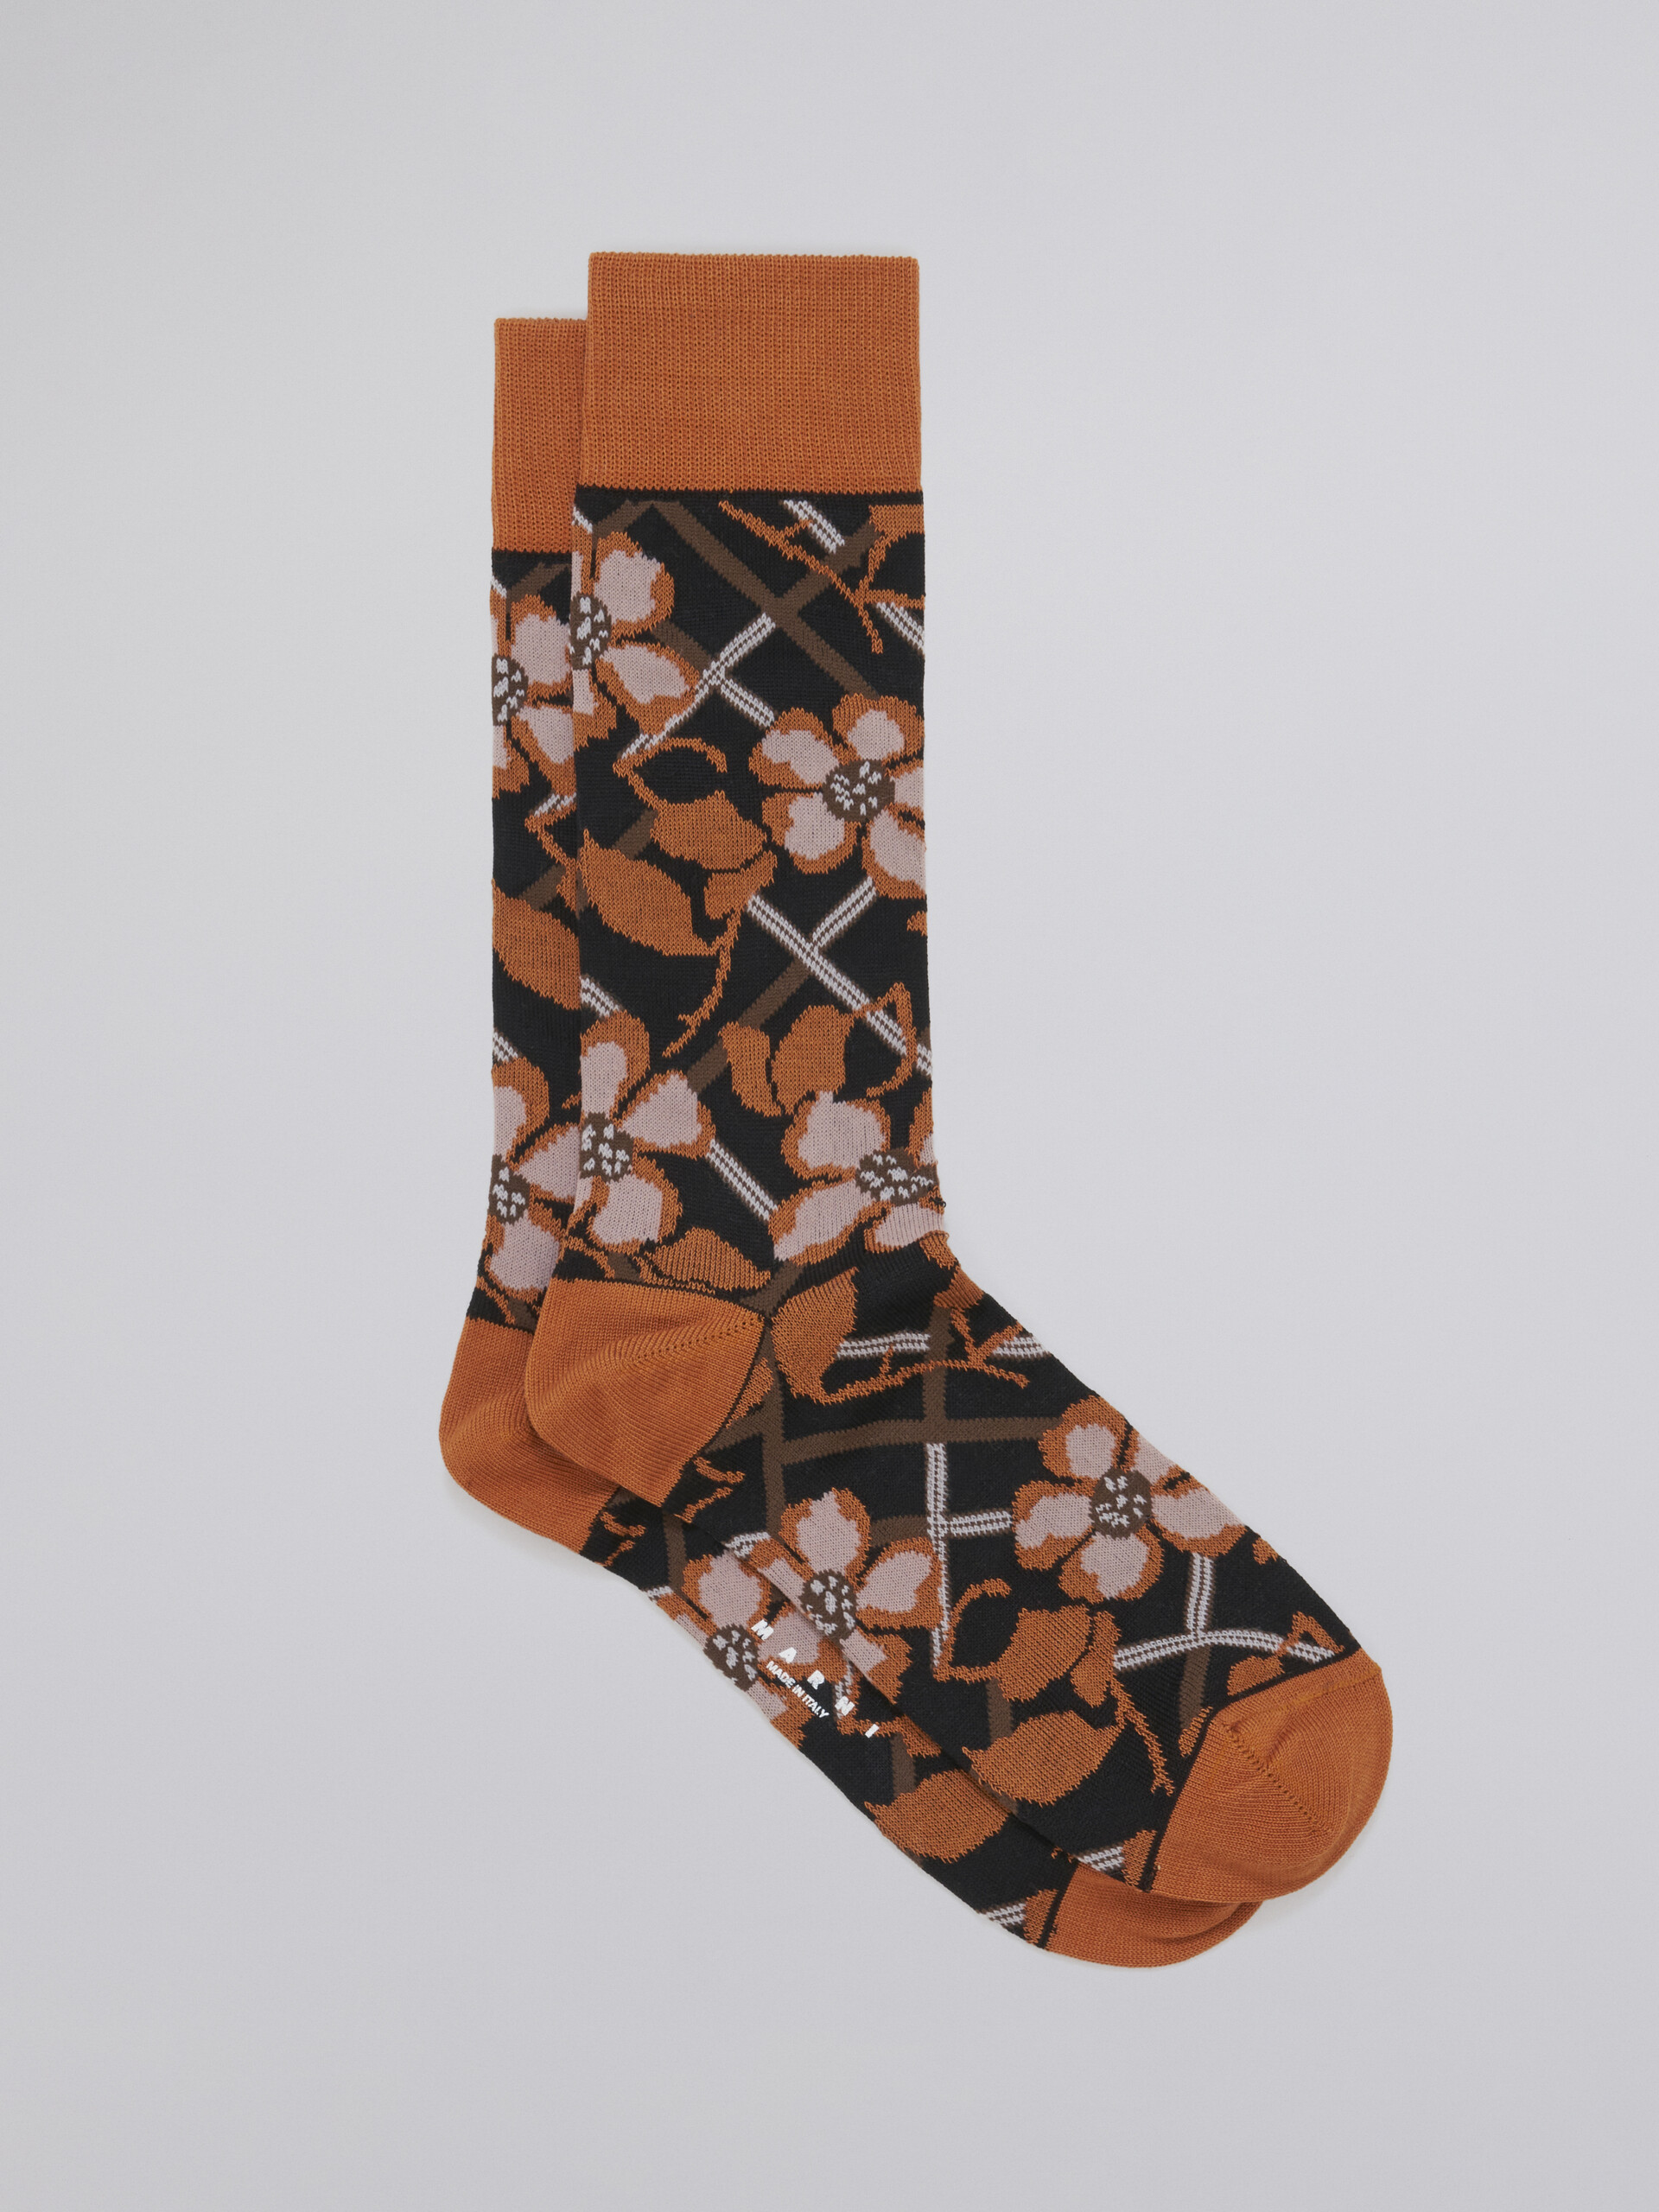 Black floral cotton and nylon jacquard sock - Socks - Image 1